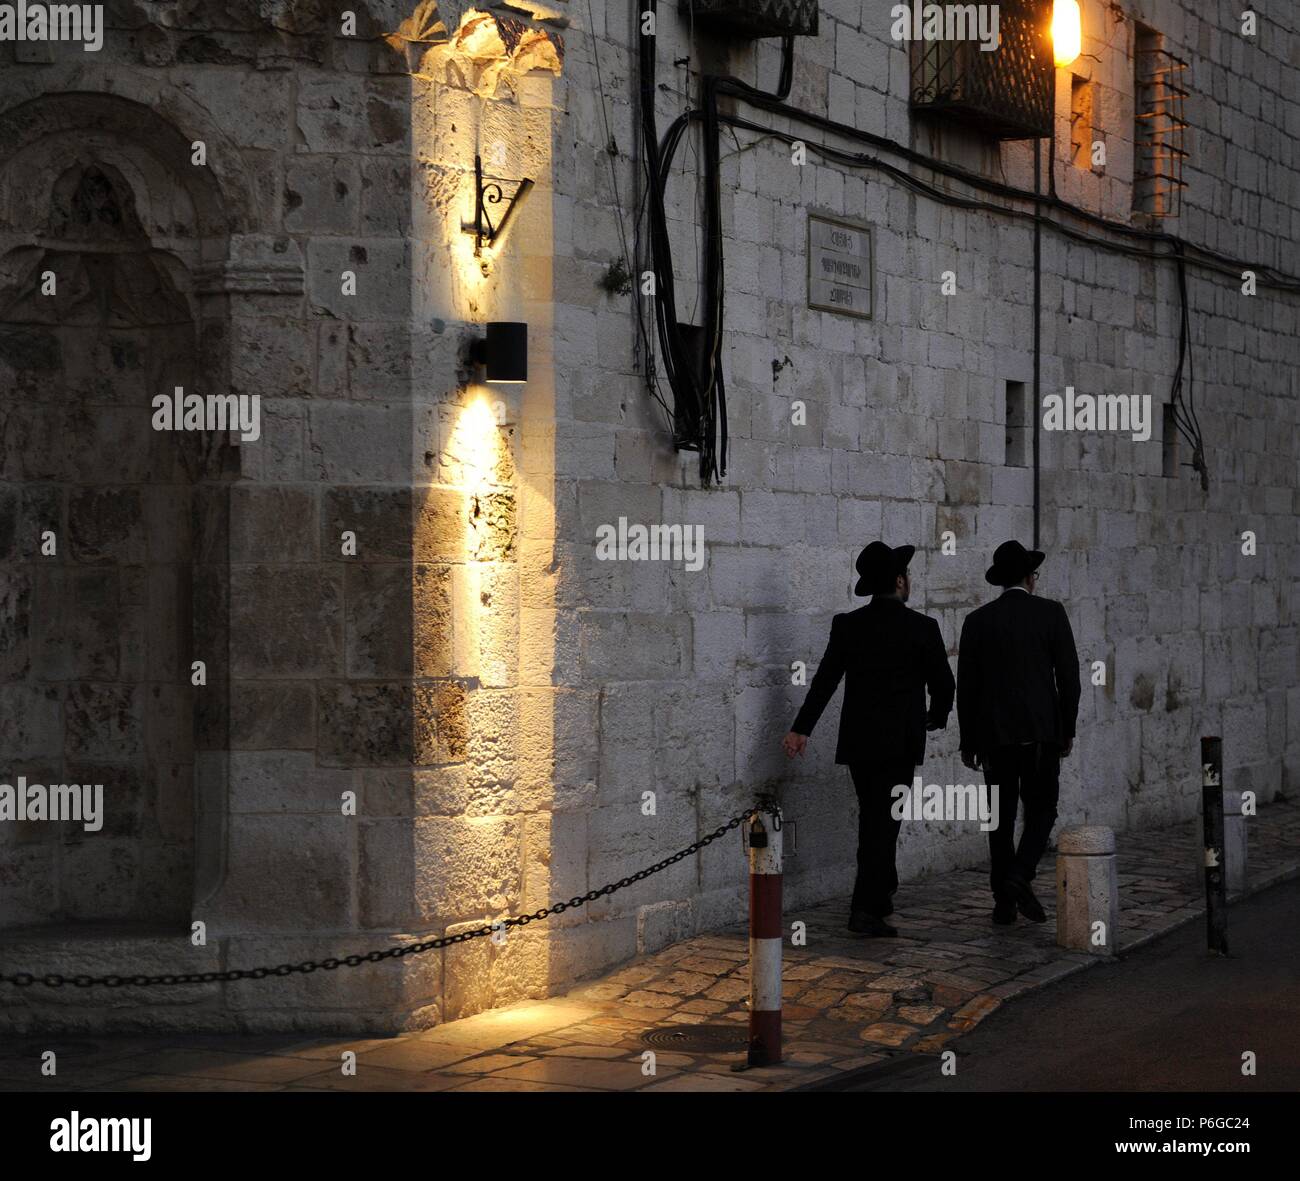 Israele. Gerusalemme. Gli uomini camminare accanto alla Cattedrale di Saint James, del XII secolo, sede del Patriarcato Armeno di Gerusalemme. Quartiere Armeno. Foto Stock